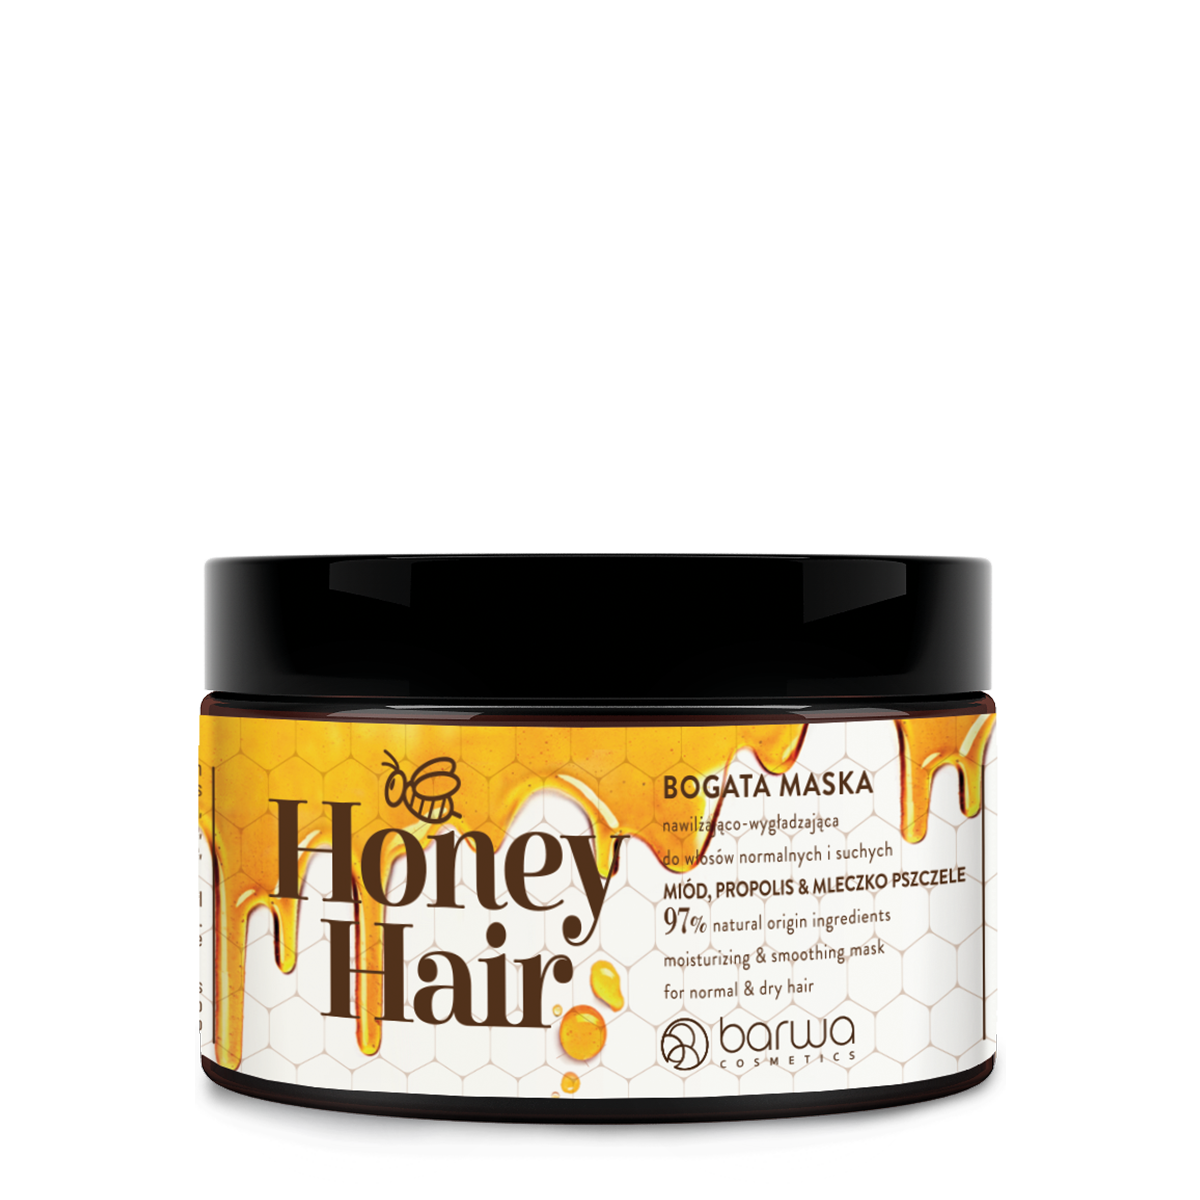 Увлажняющая и разглаживающая маска для волос Barwa Honey Hair, 220 мл